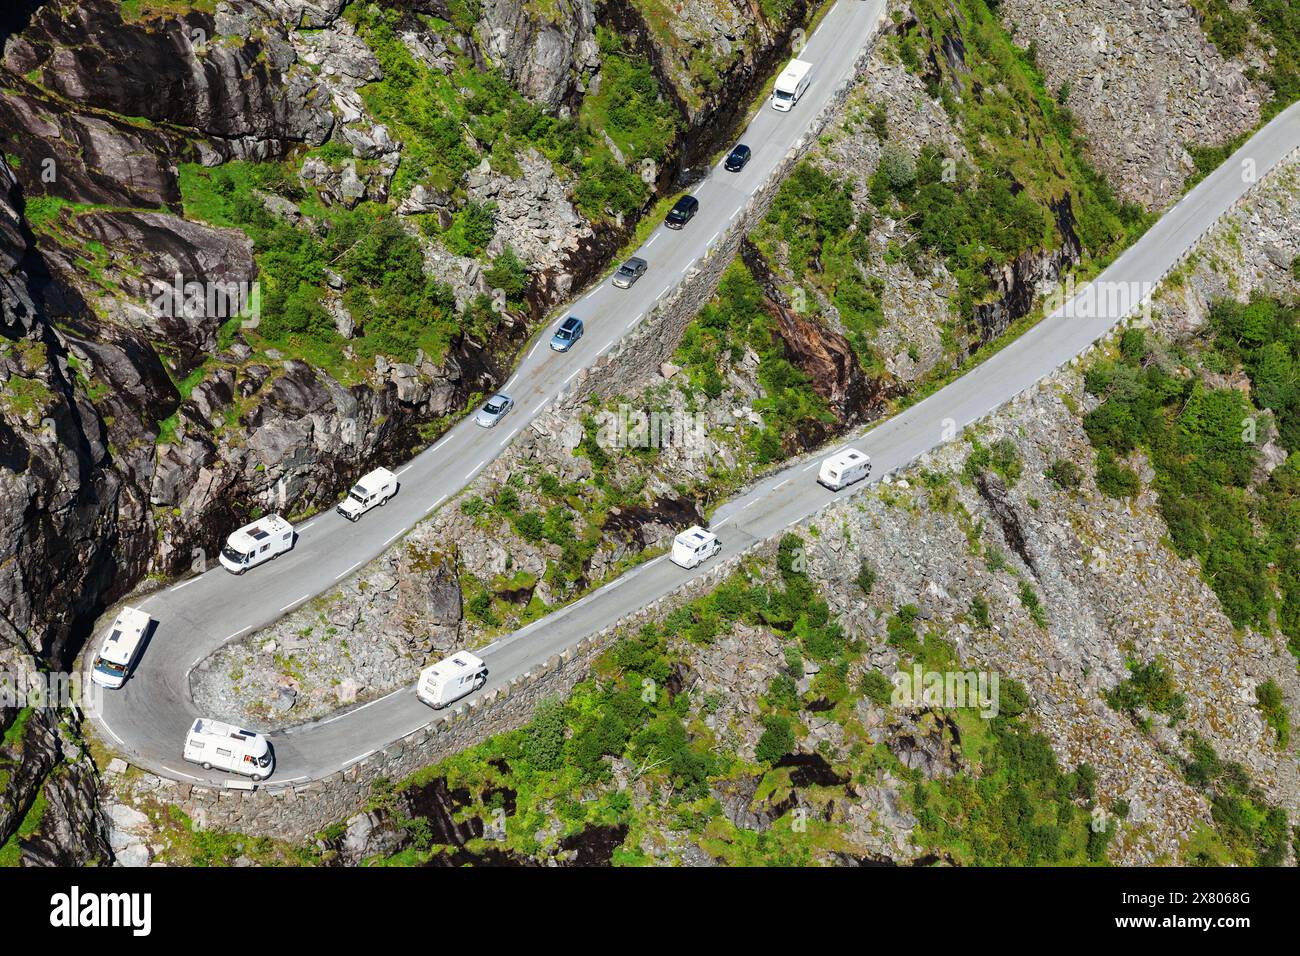 Les voitures et les VR empruntent une route sinueuse Trollstigen (Trolls Path) en Norvège connue pour ses virages serrés et ses vues imprenables sur les montagnes Banque D'Images